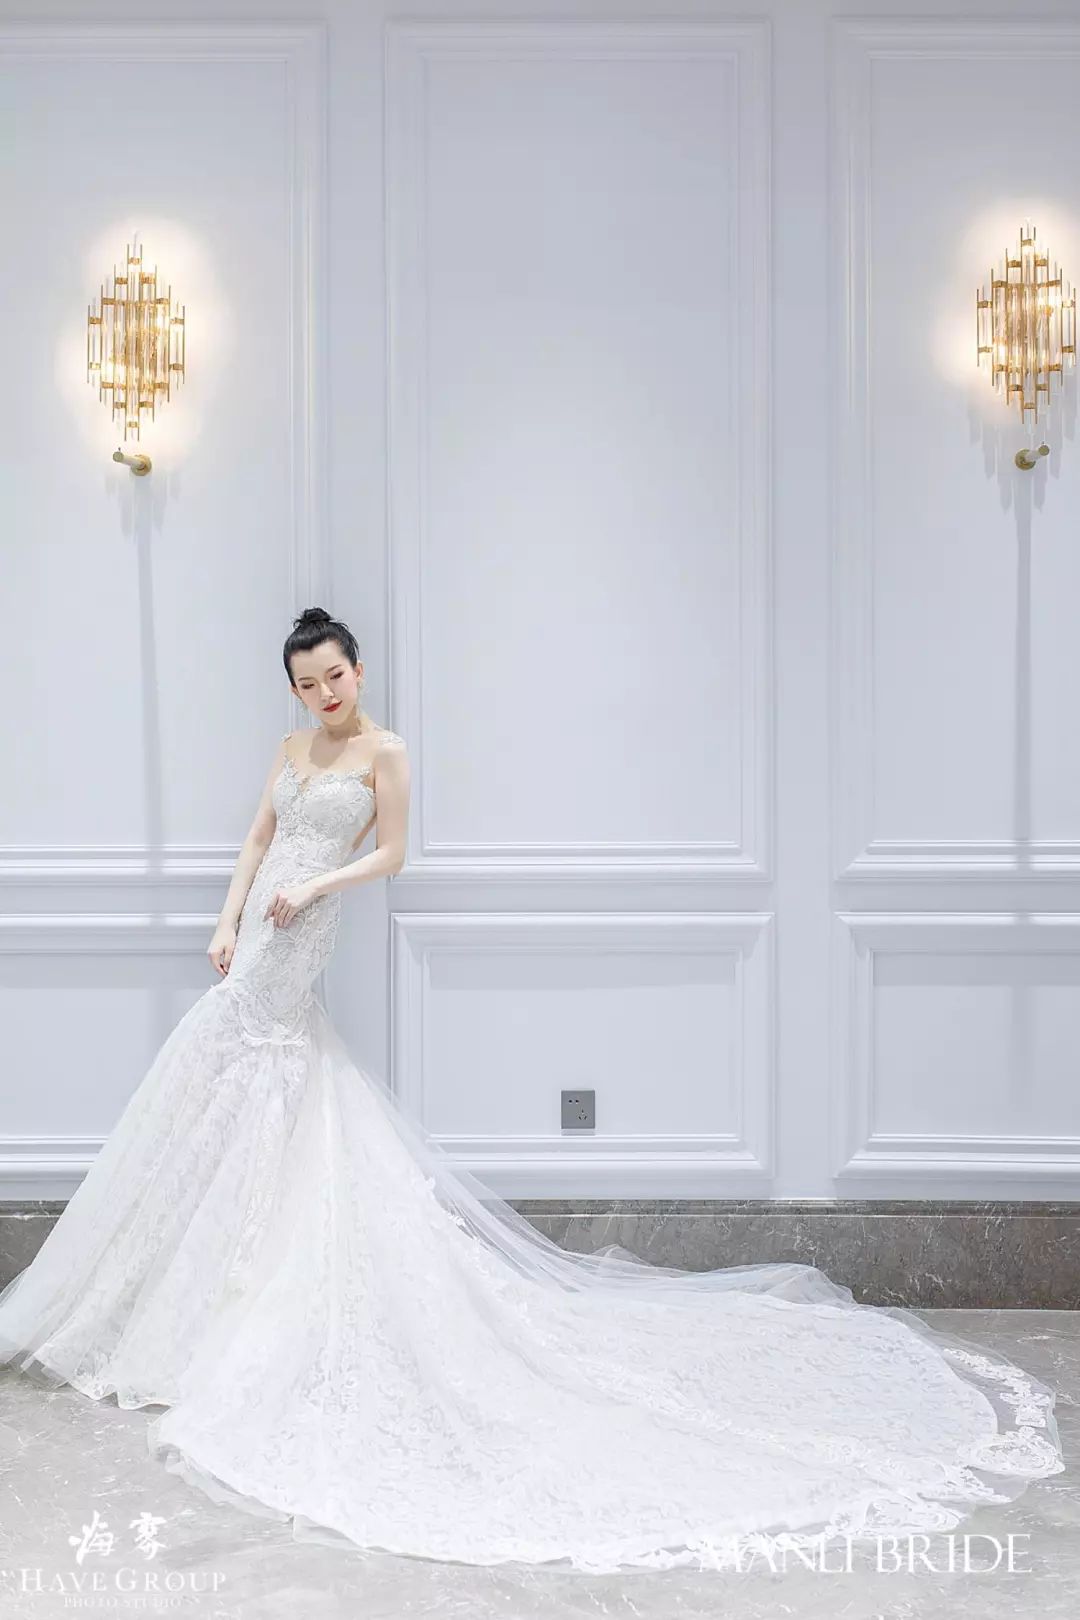 AOLISHA|澳利莎婚纱|中国十大婚纱品牌|婚纱礼服高端定制